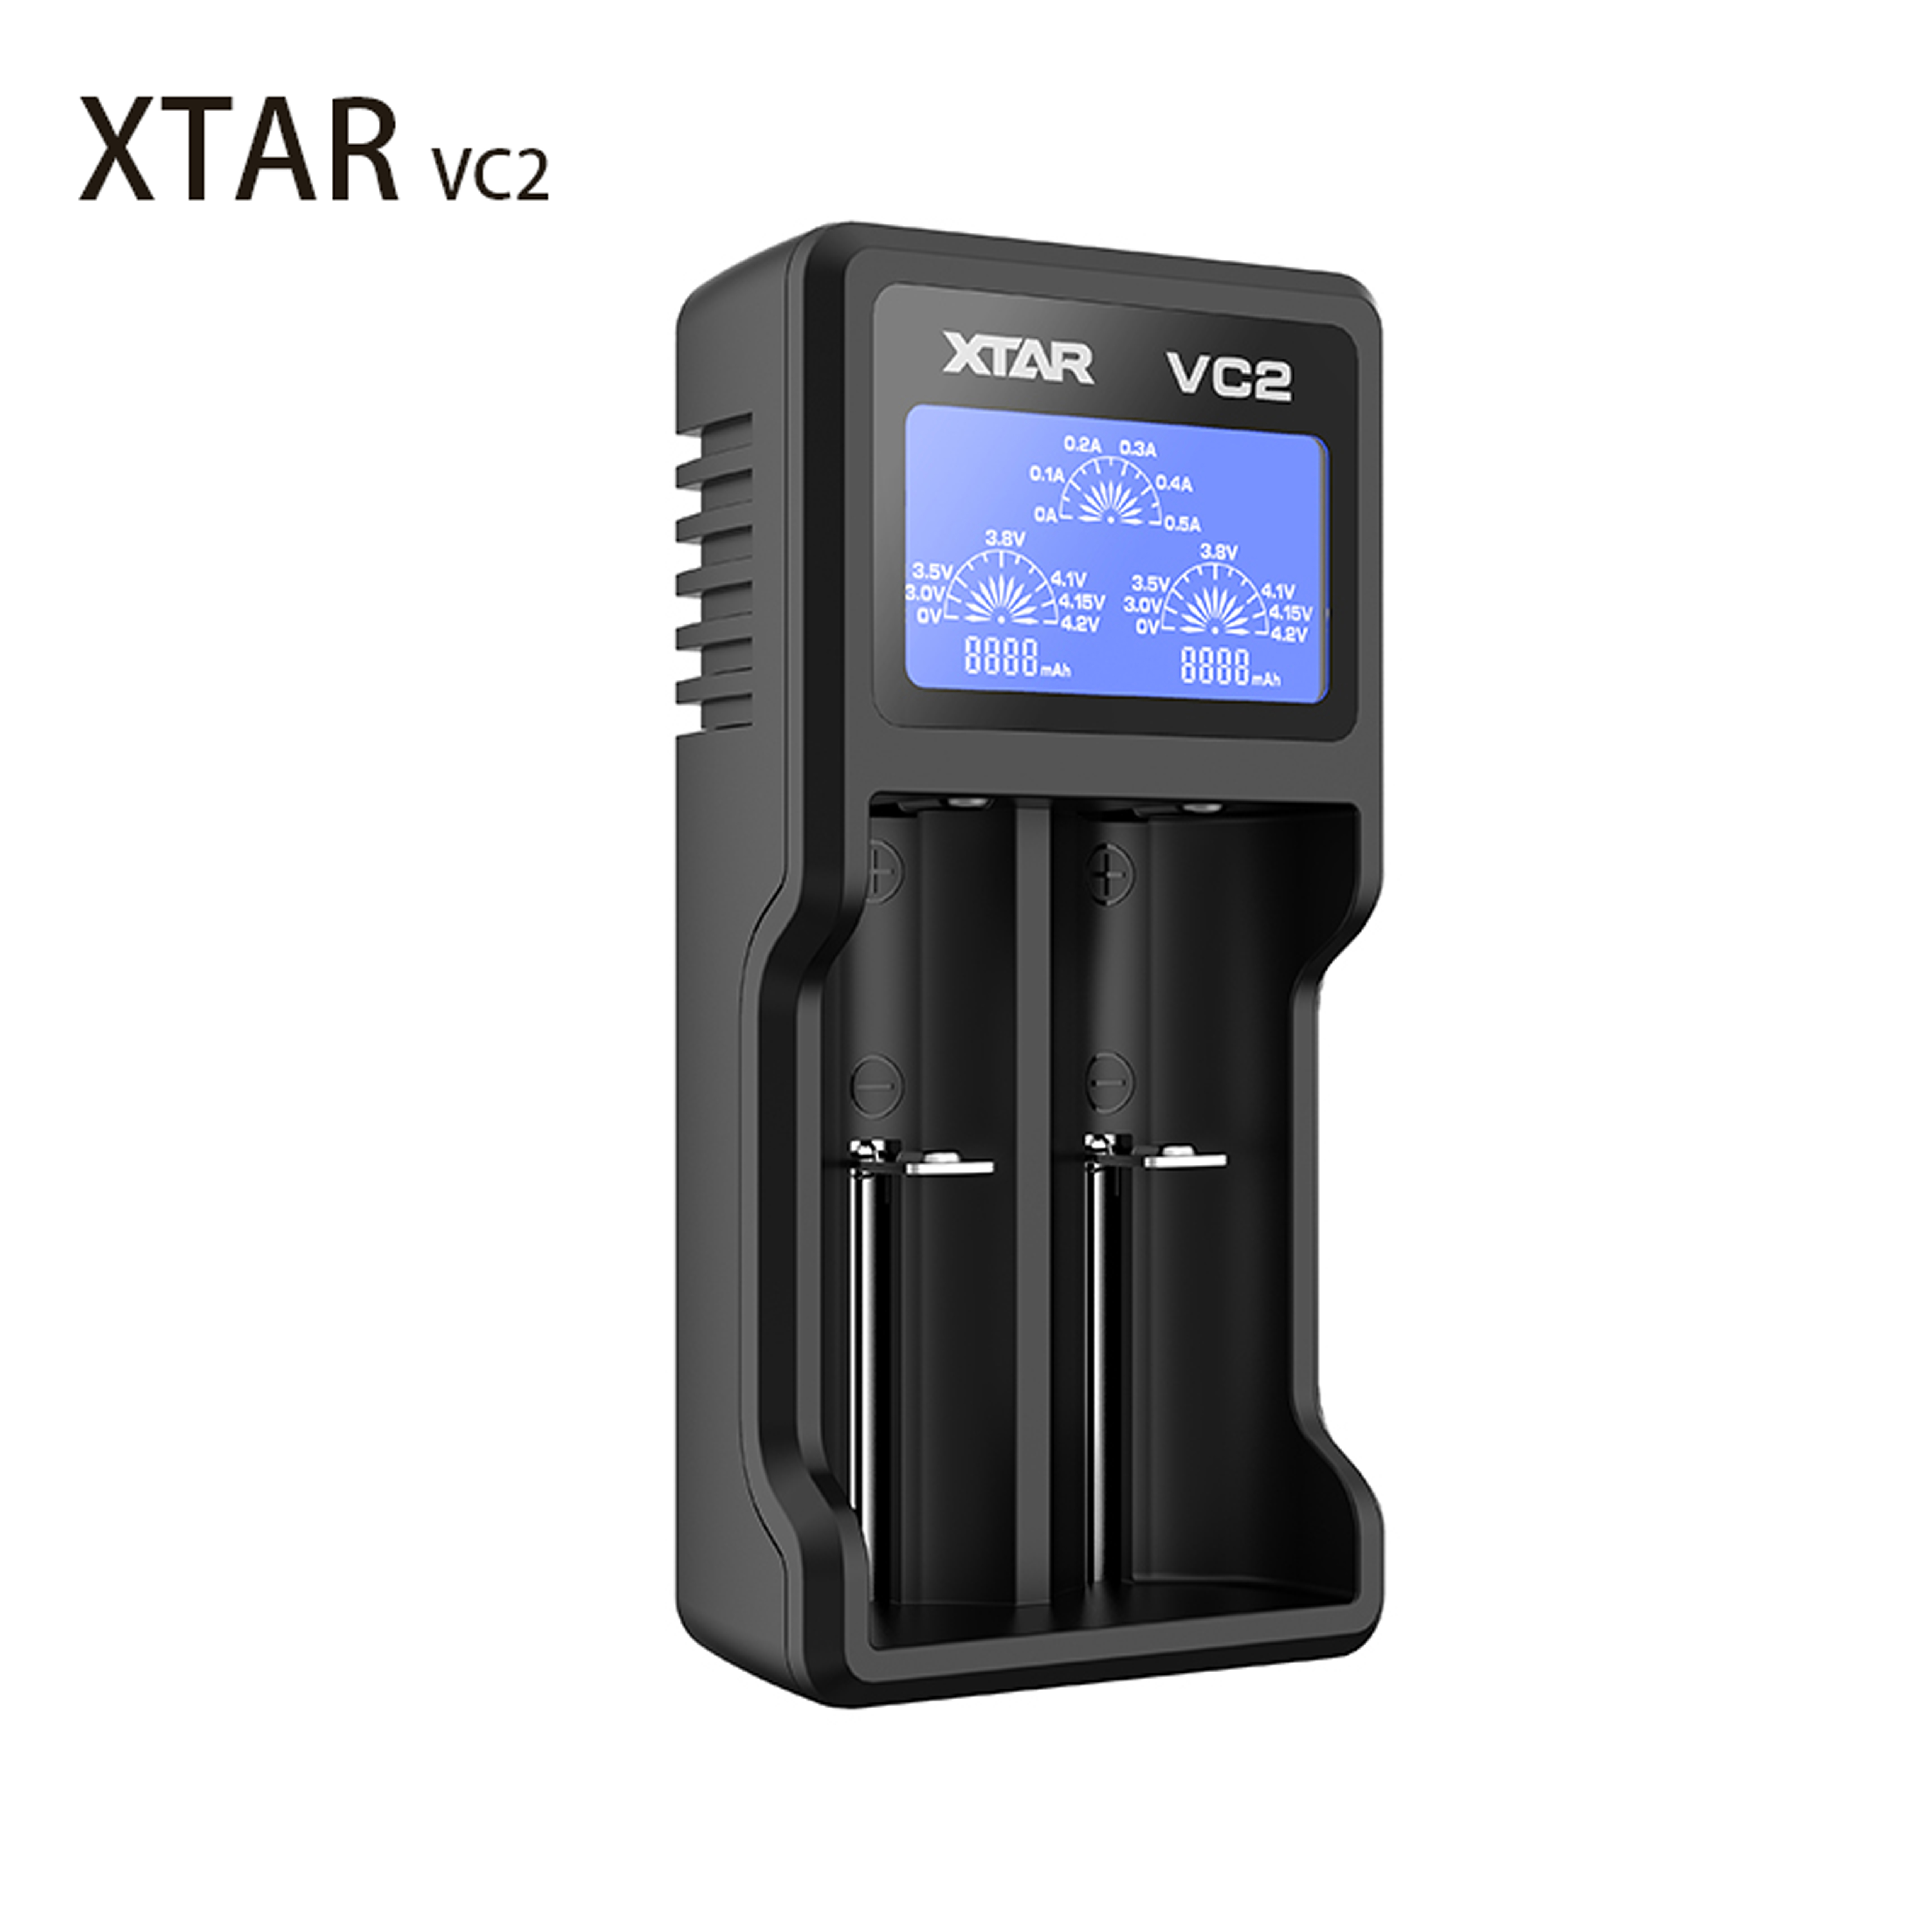 （ผลิตภัณฑ์อย่างเป็นทางการ）XTAR VC2 เครื่องชาร์จถ่าน 18650 / AA / AAA คุณภาพสูง ของแท้ 100%